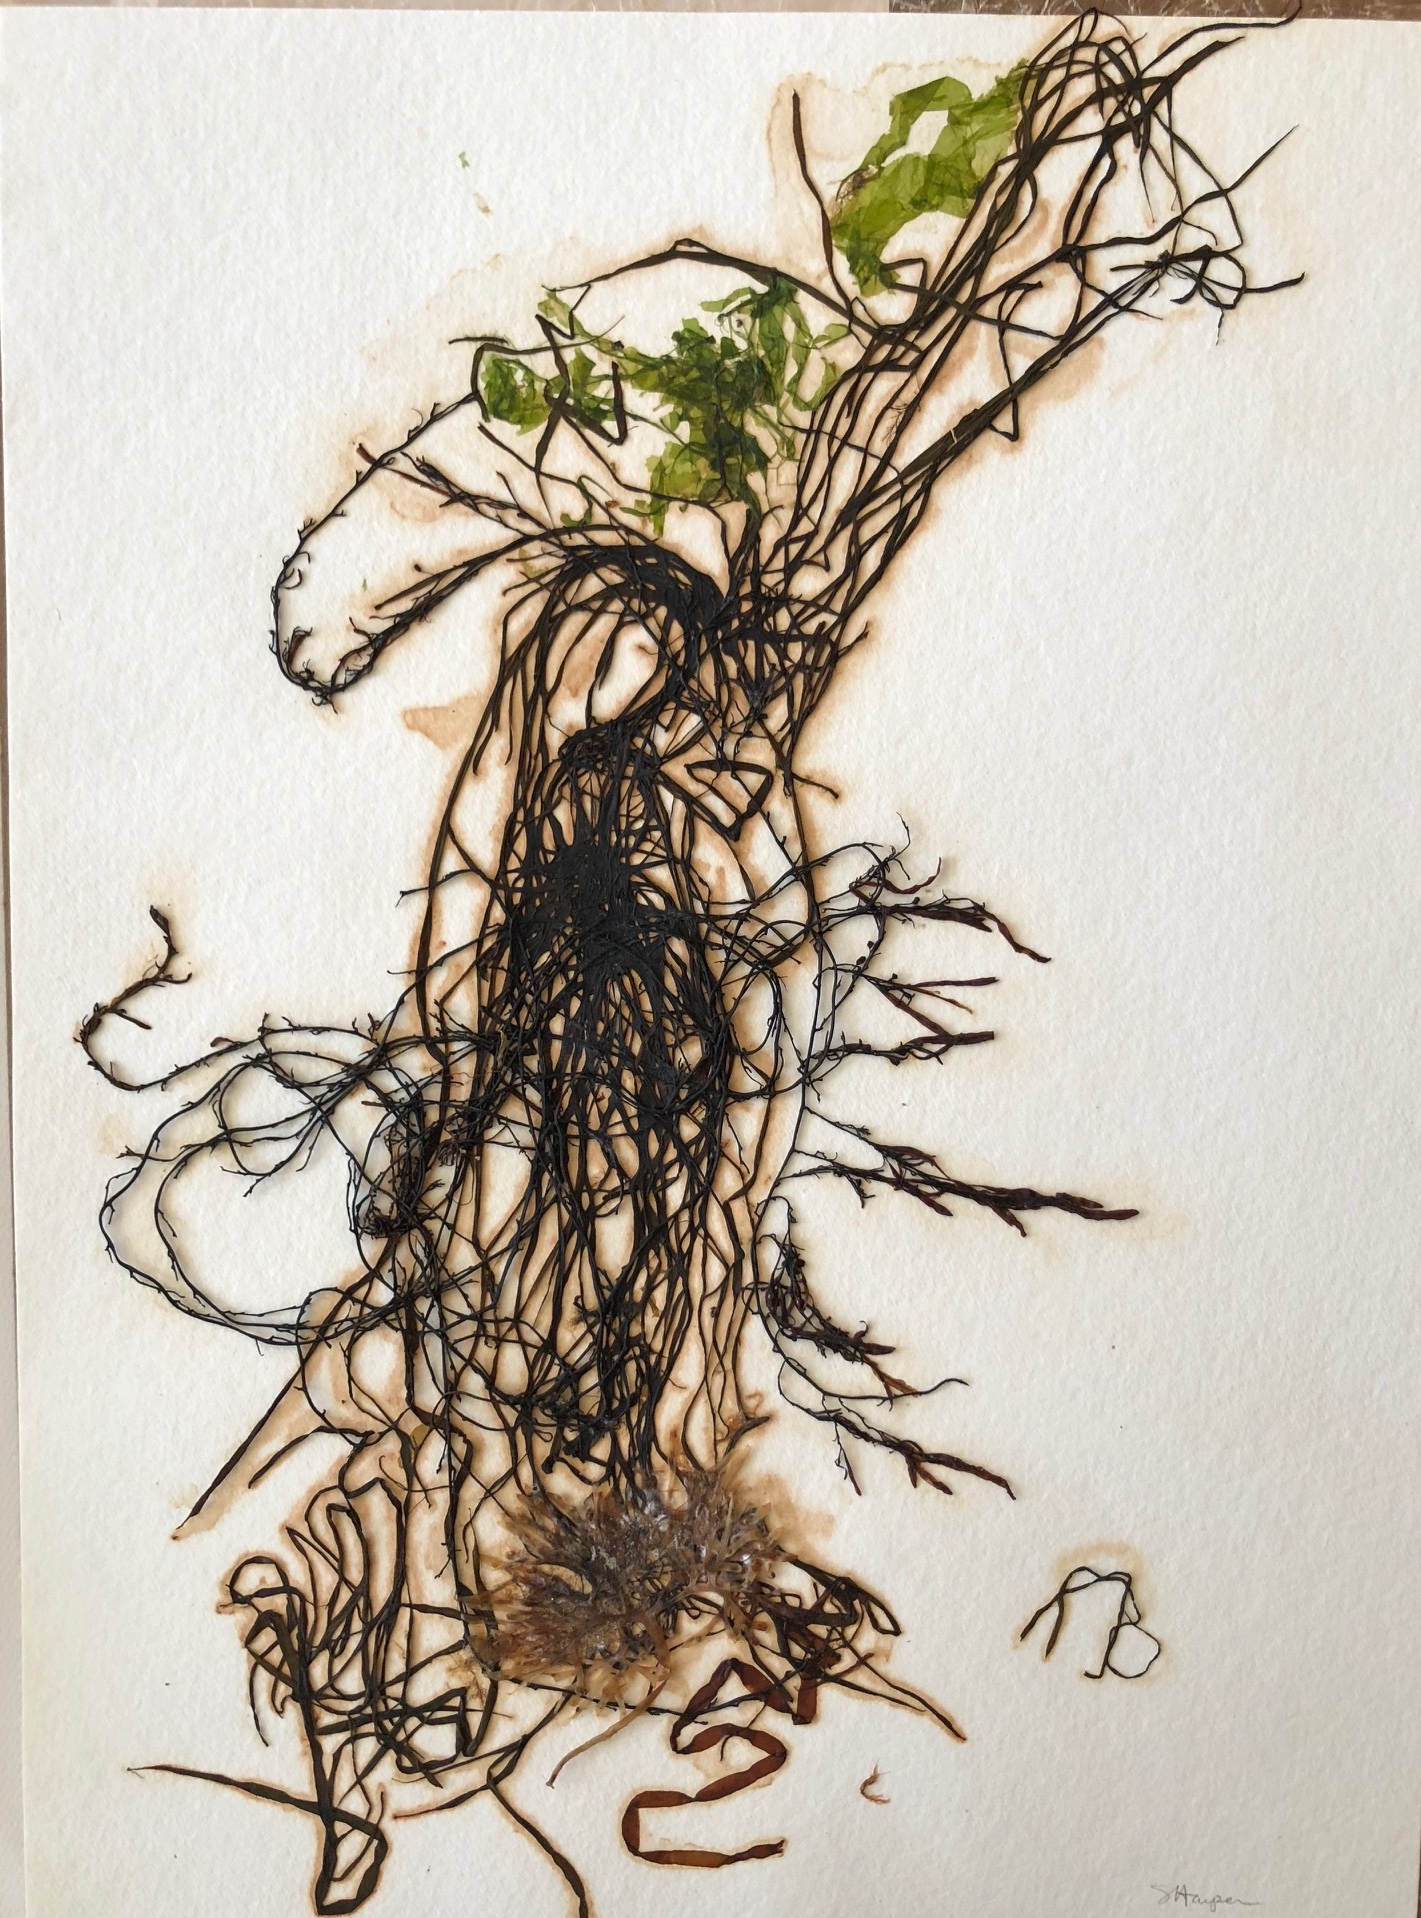 Seaweed 12/13, 11x14